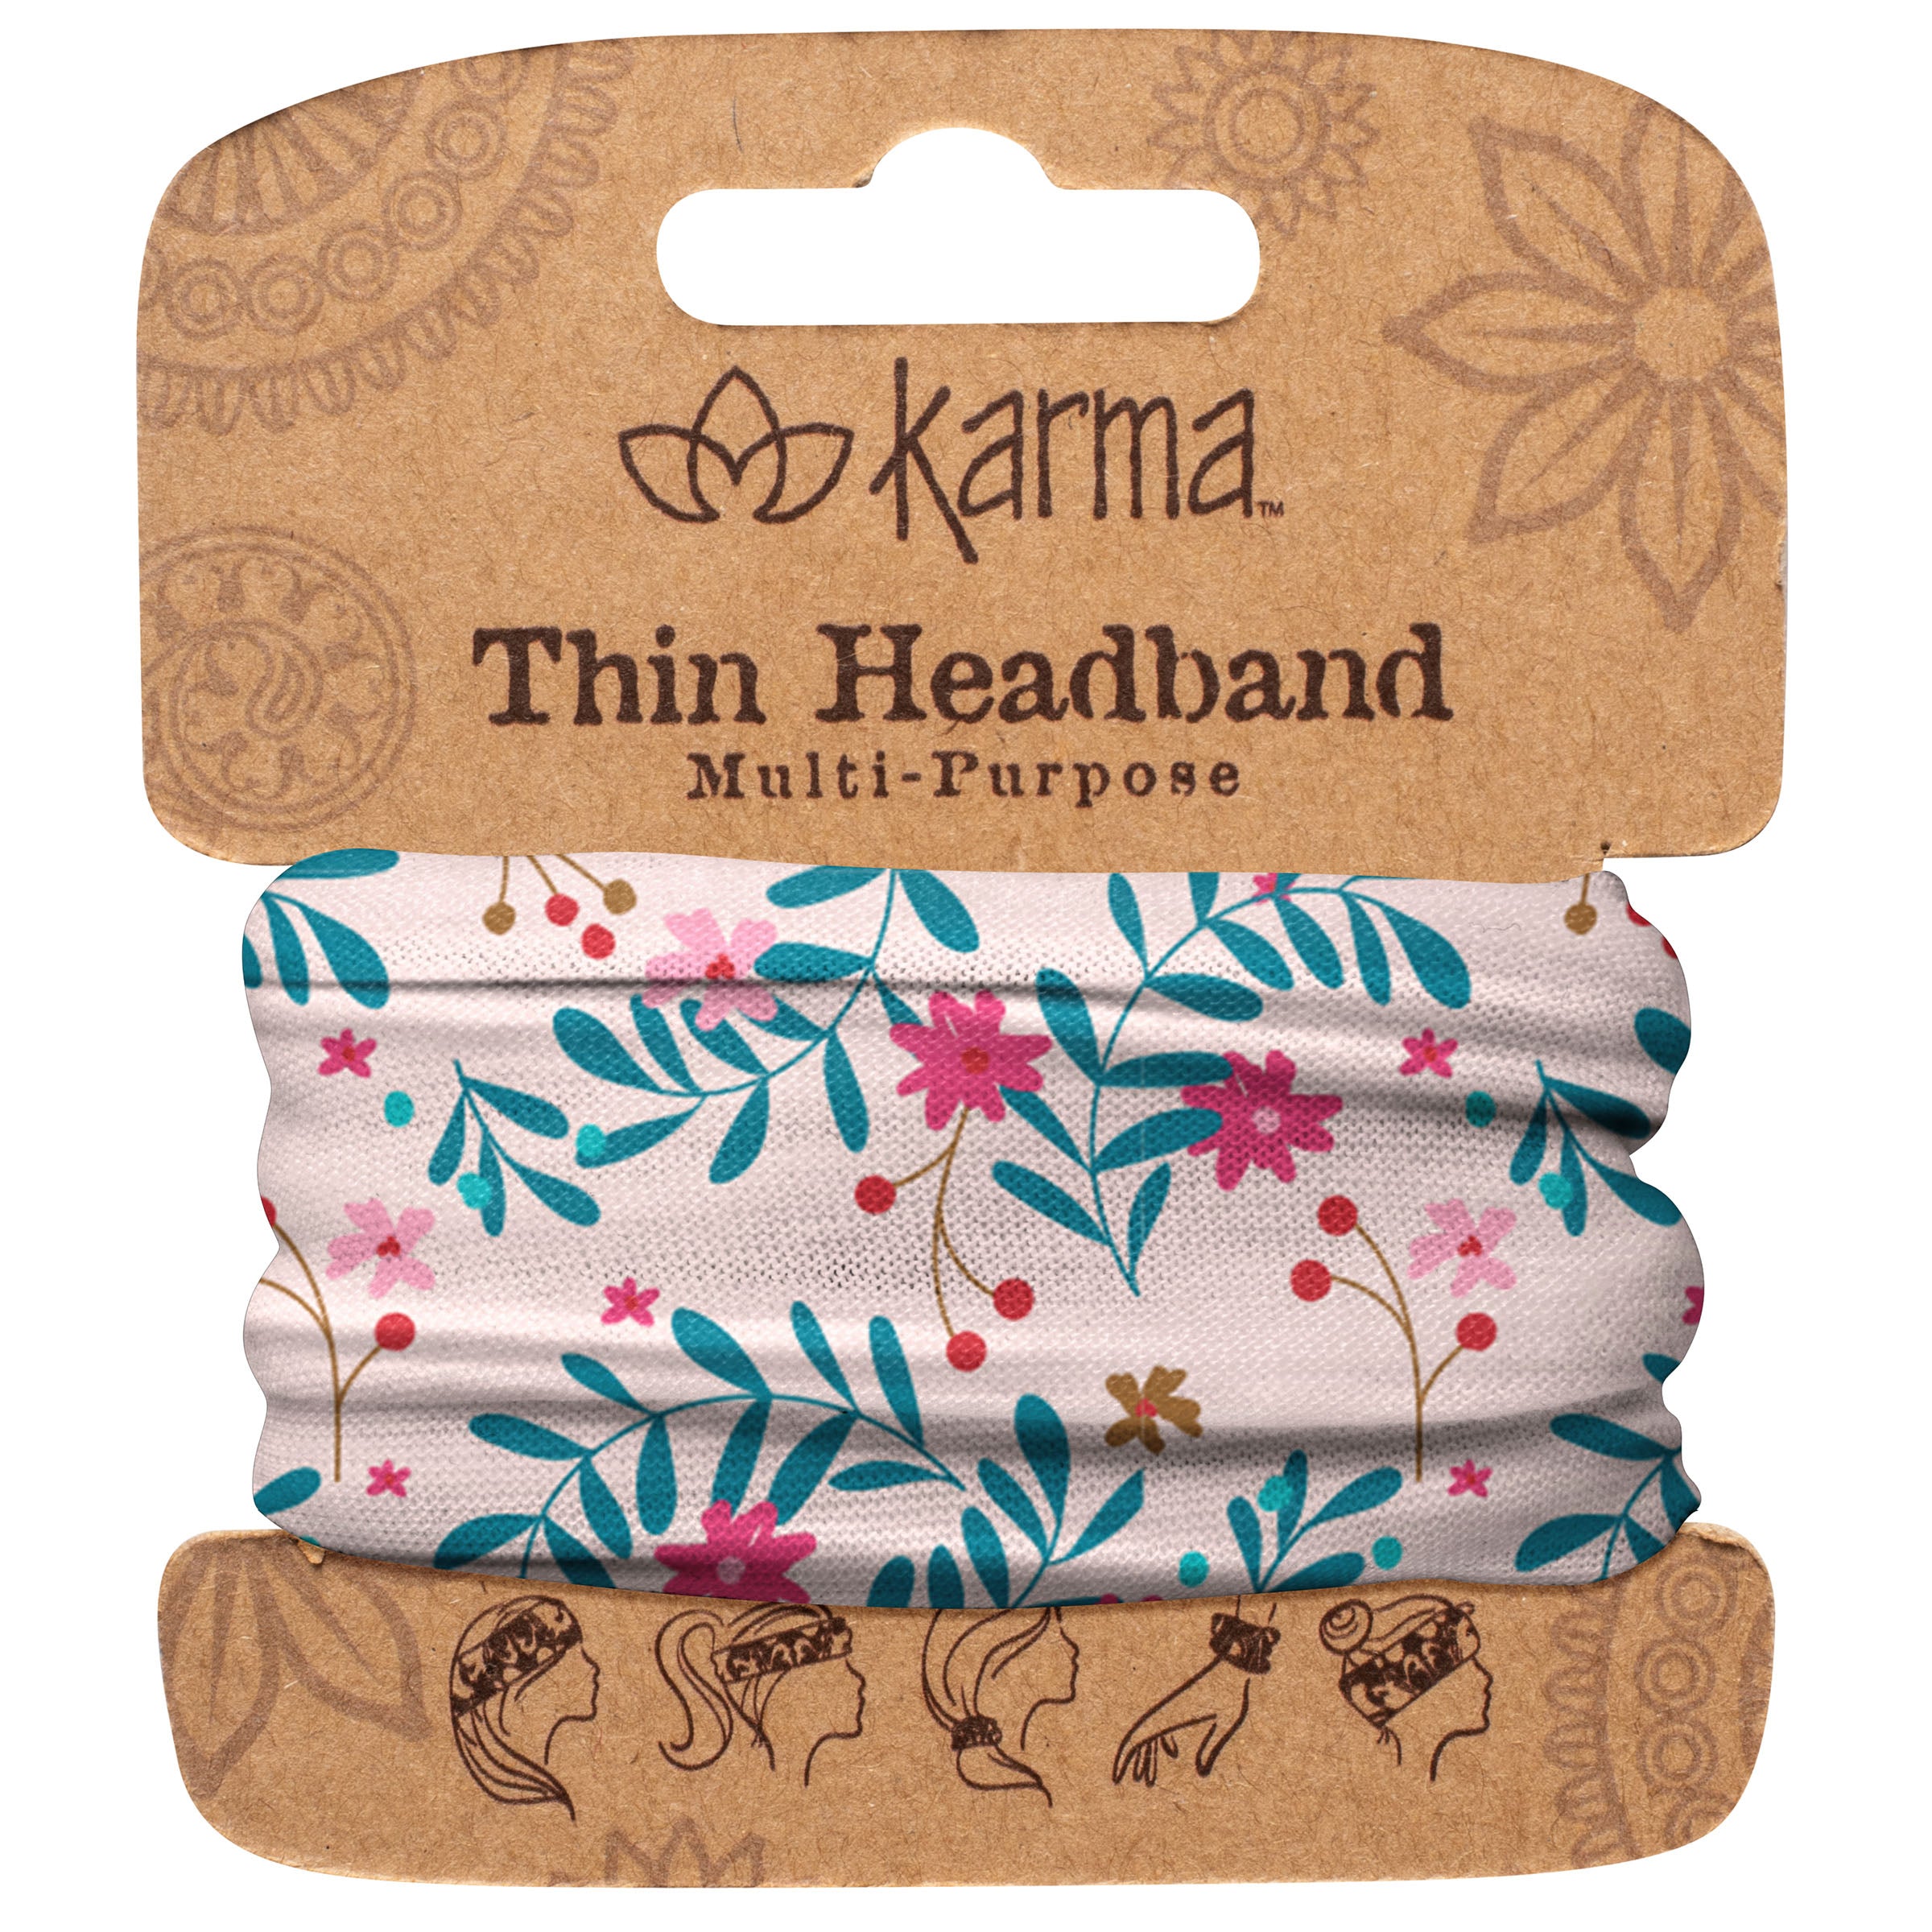 Thin Headbands – Karma